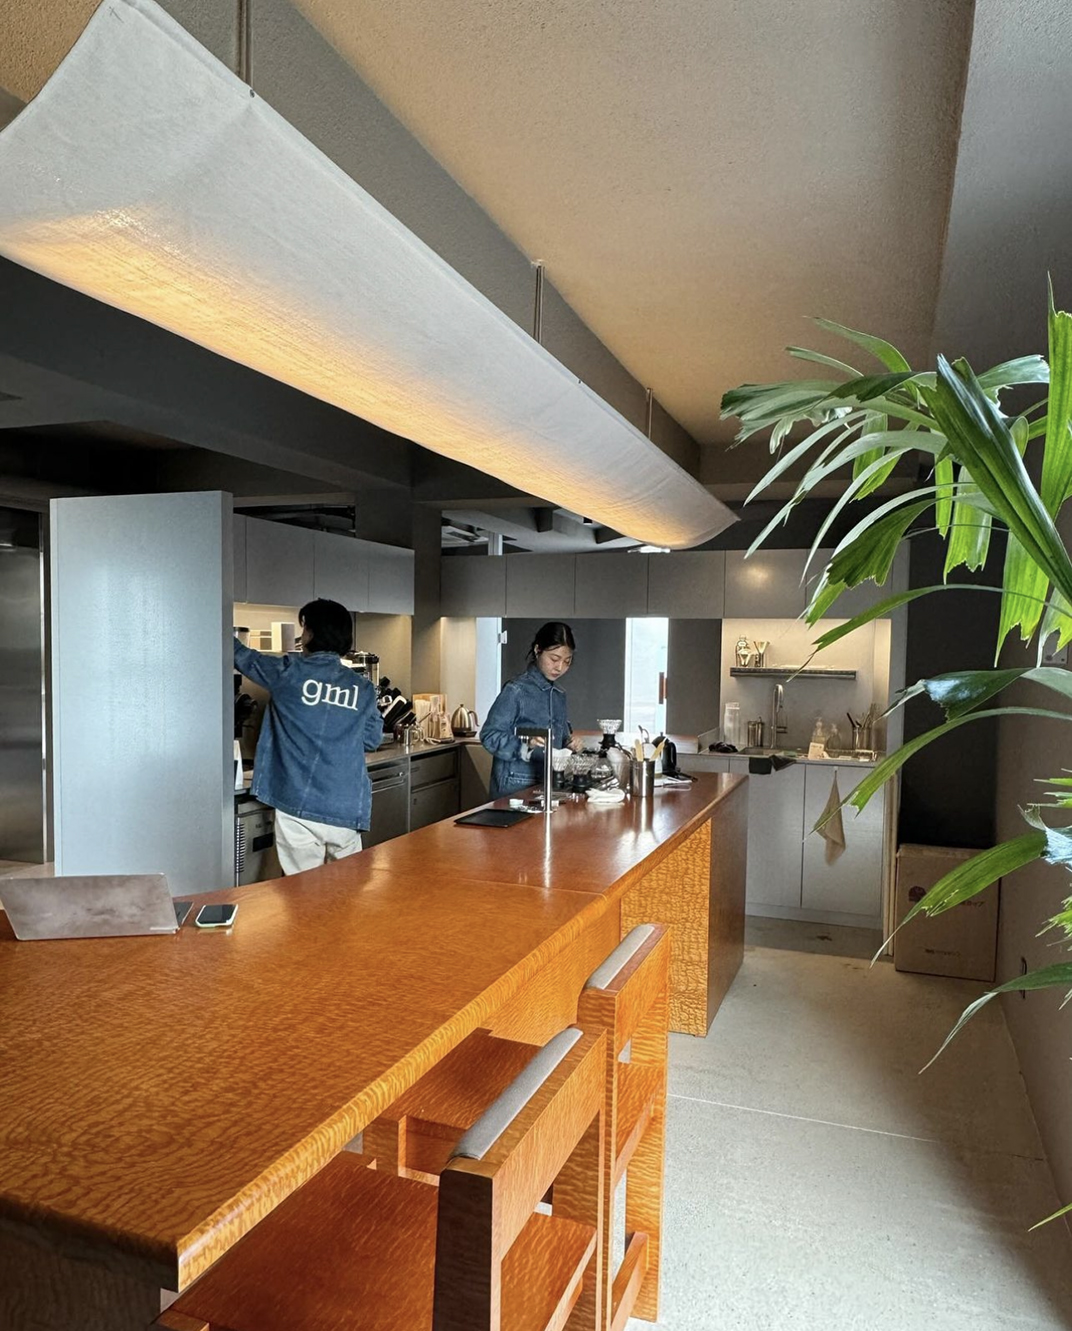 专注手冲的咖啡馆G-M-EL  深圳 珠海 东莞 上海 北京 广州 武汉 咖啡店 餐饮商业 logo设计 vi设计 空间设计